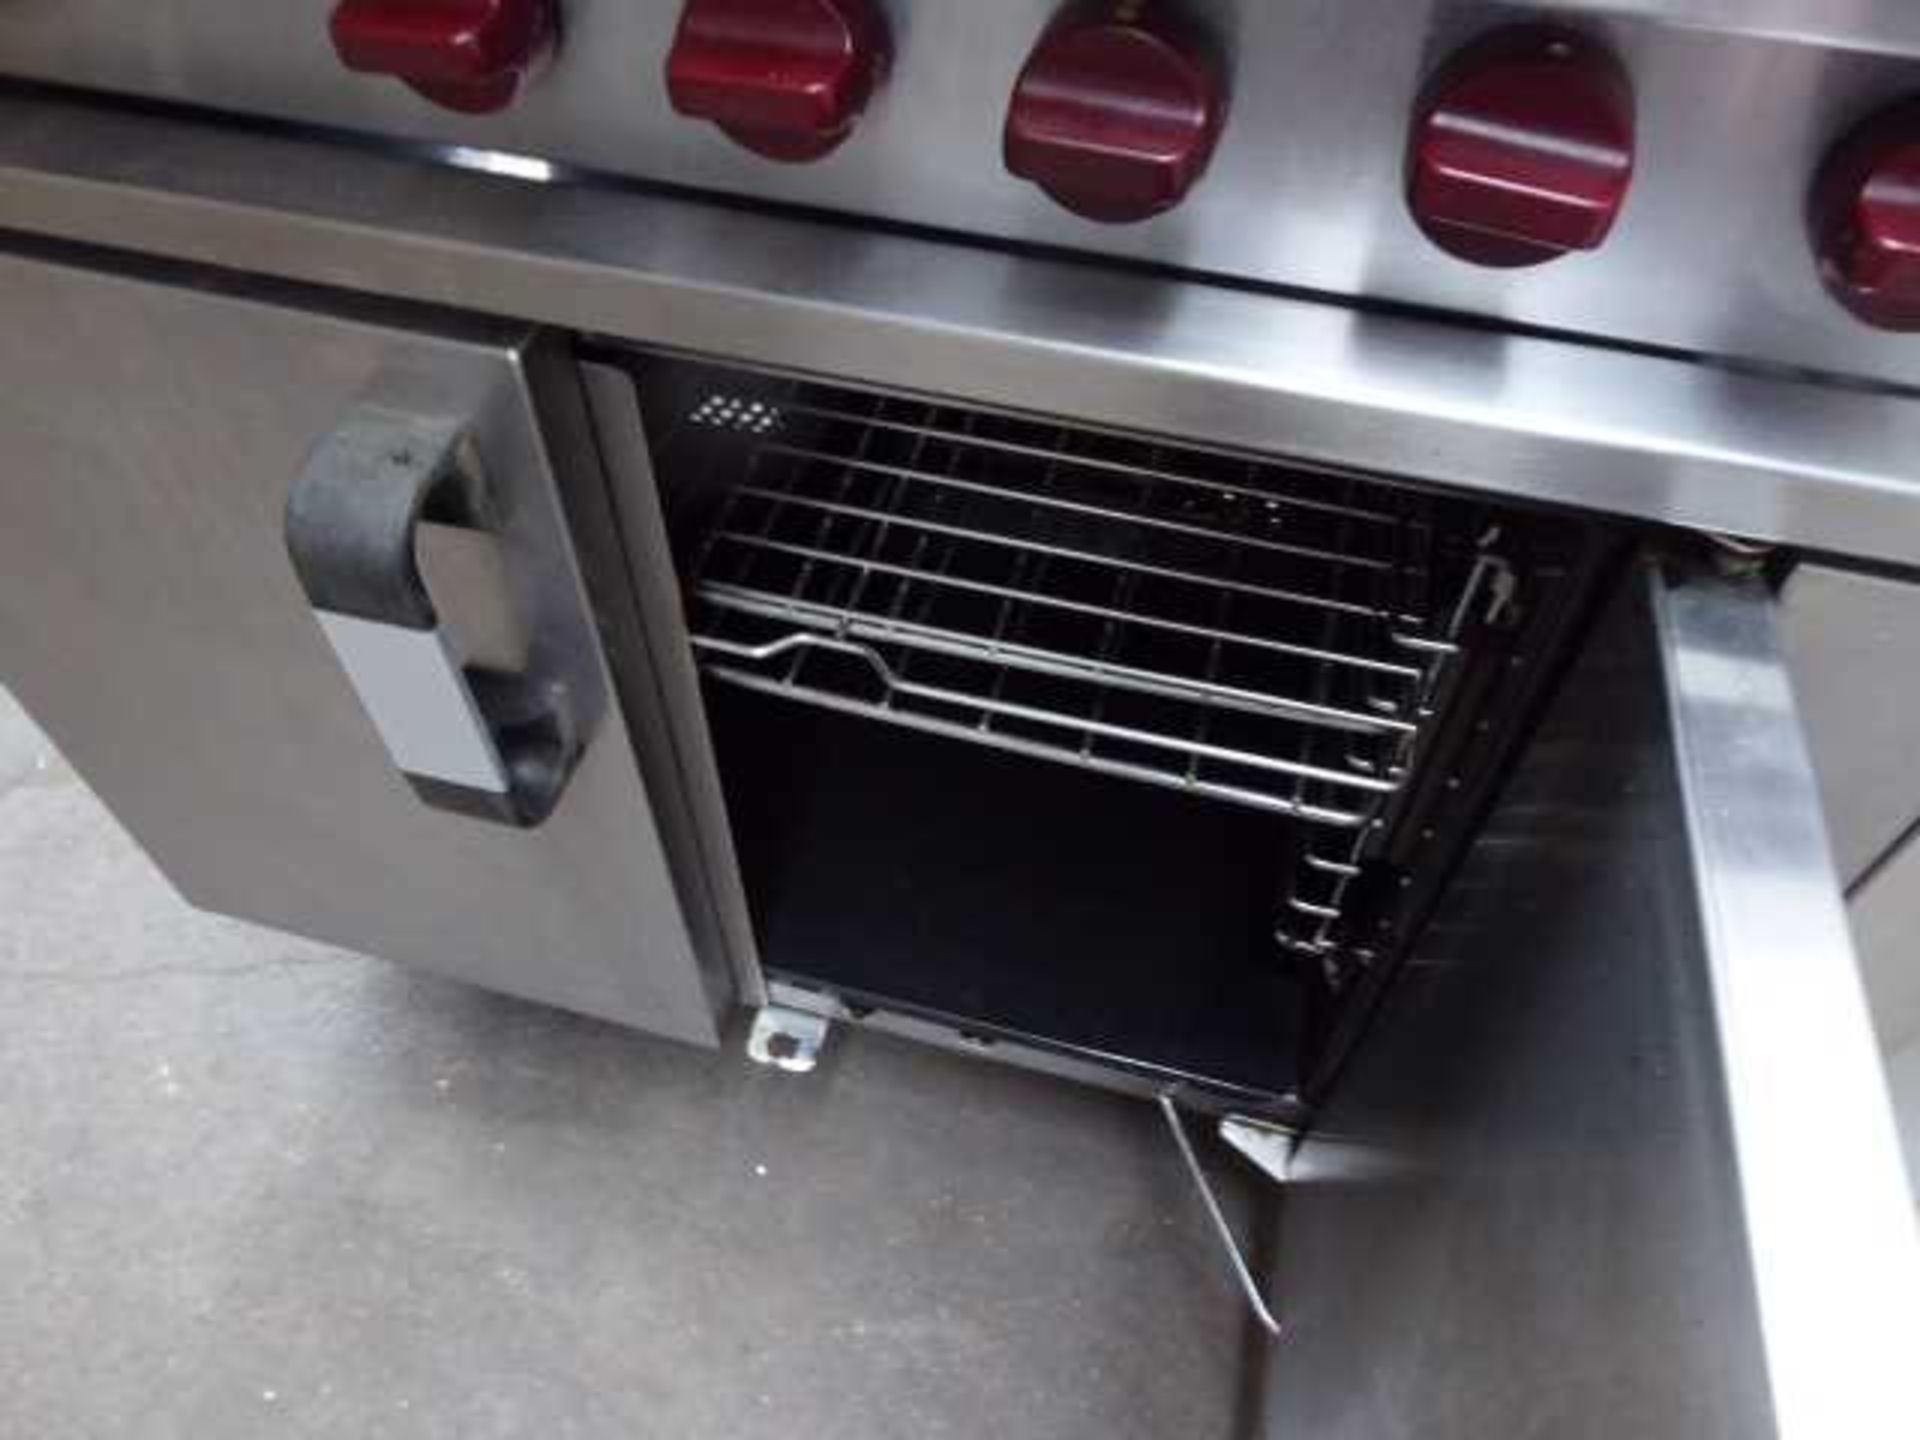 +VAT 90cm Gas 6 burner cooker with 2 door oven under - Image 2 of 2